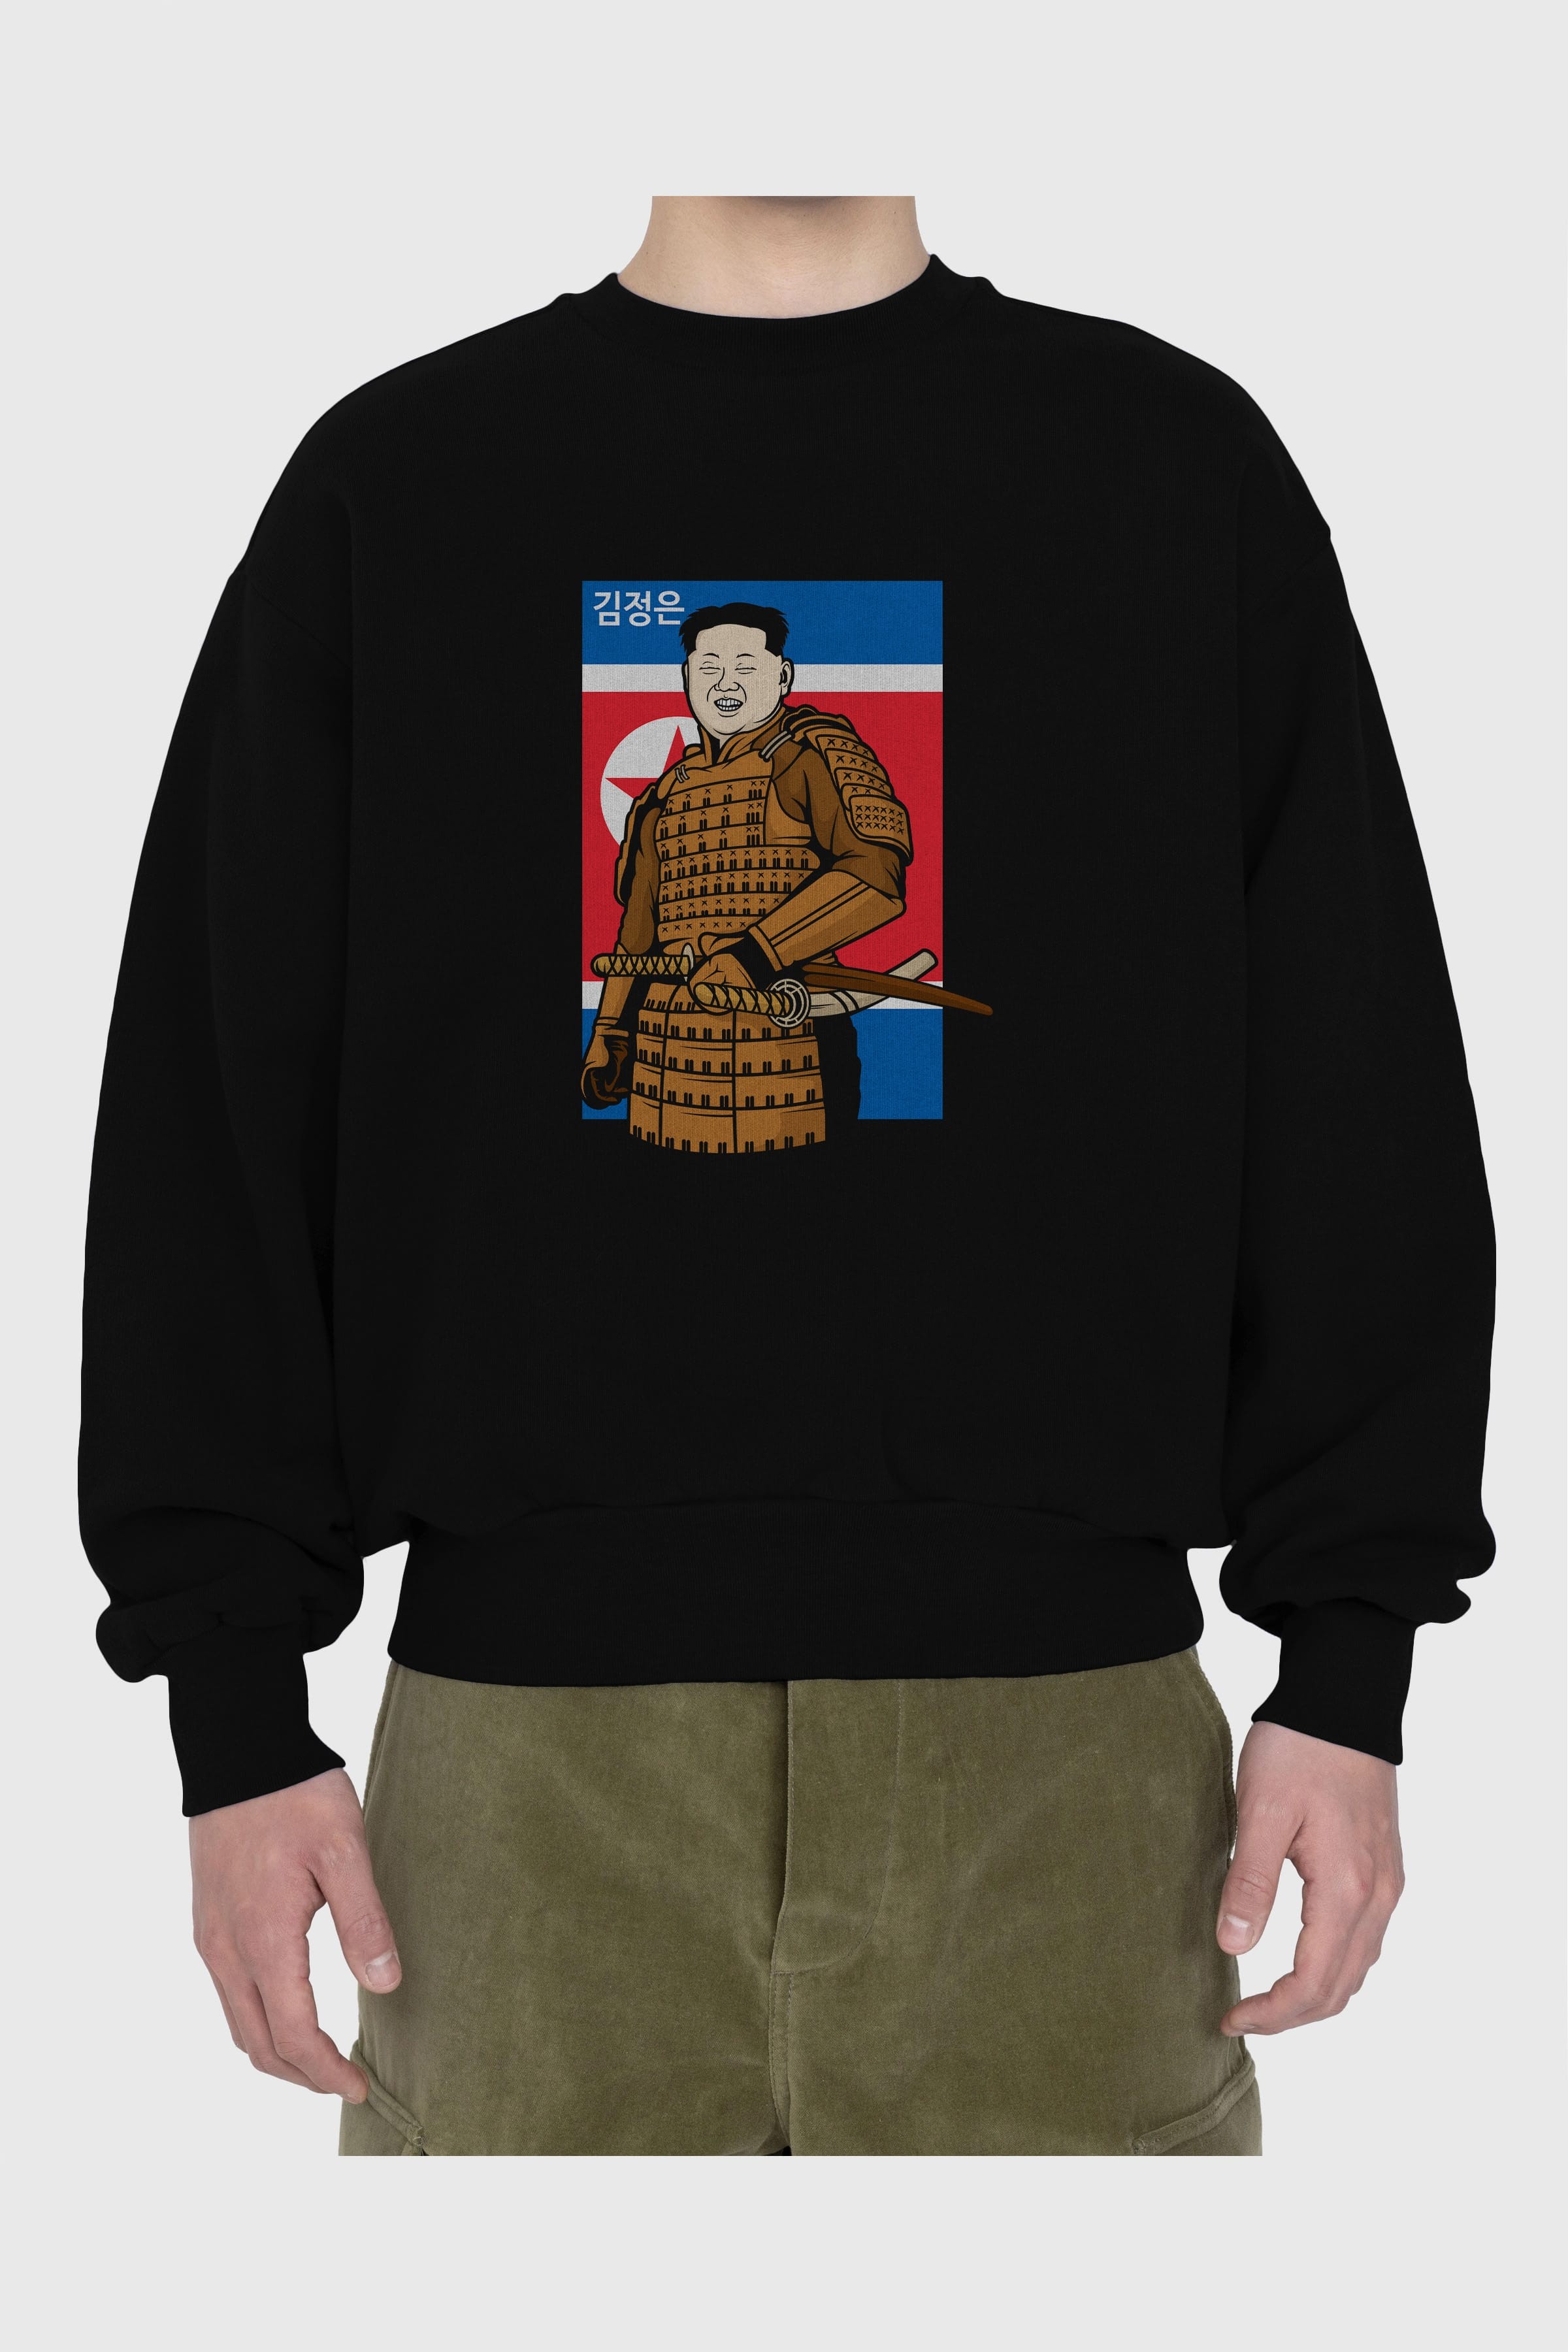 Samurai Jong Un Ön Baskılı Oversize Sweatshirt Erkek Kadın Unisex